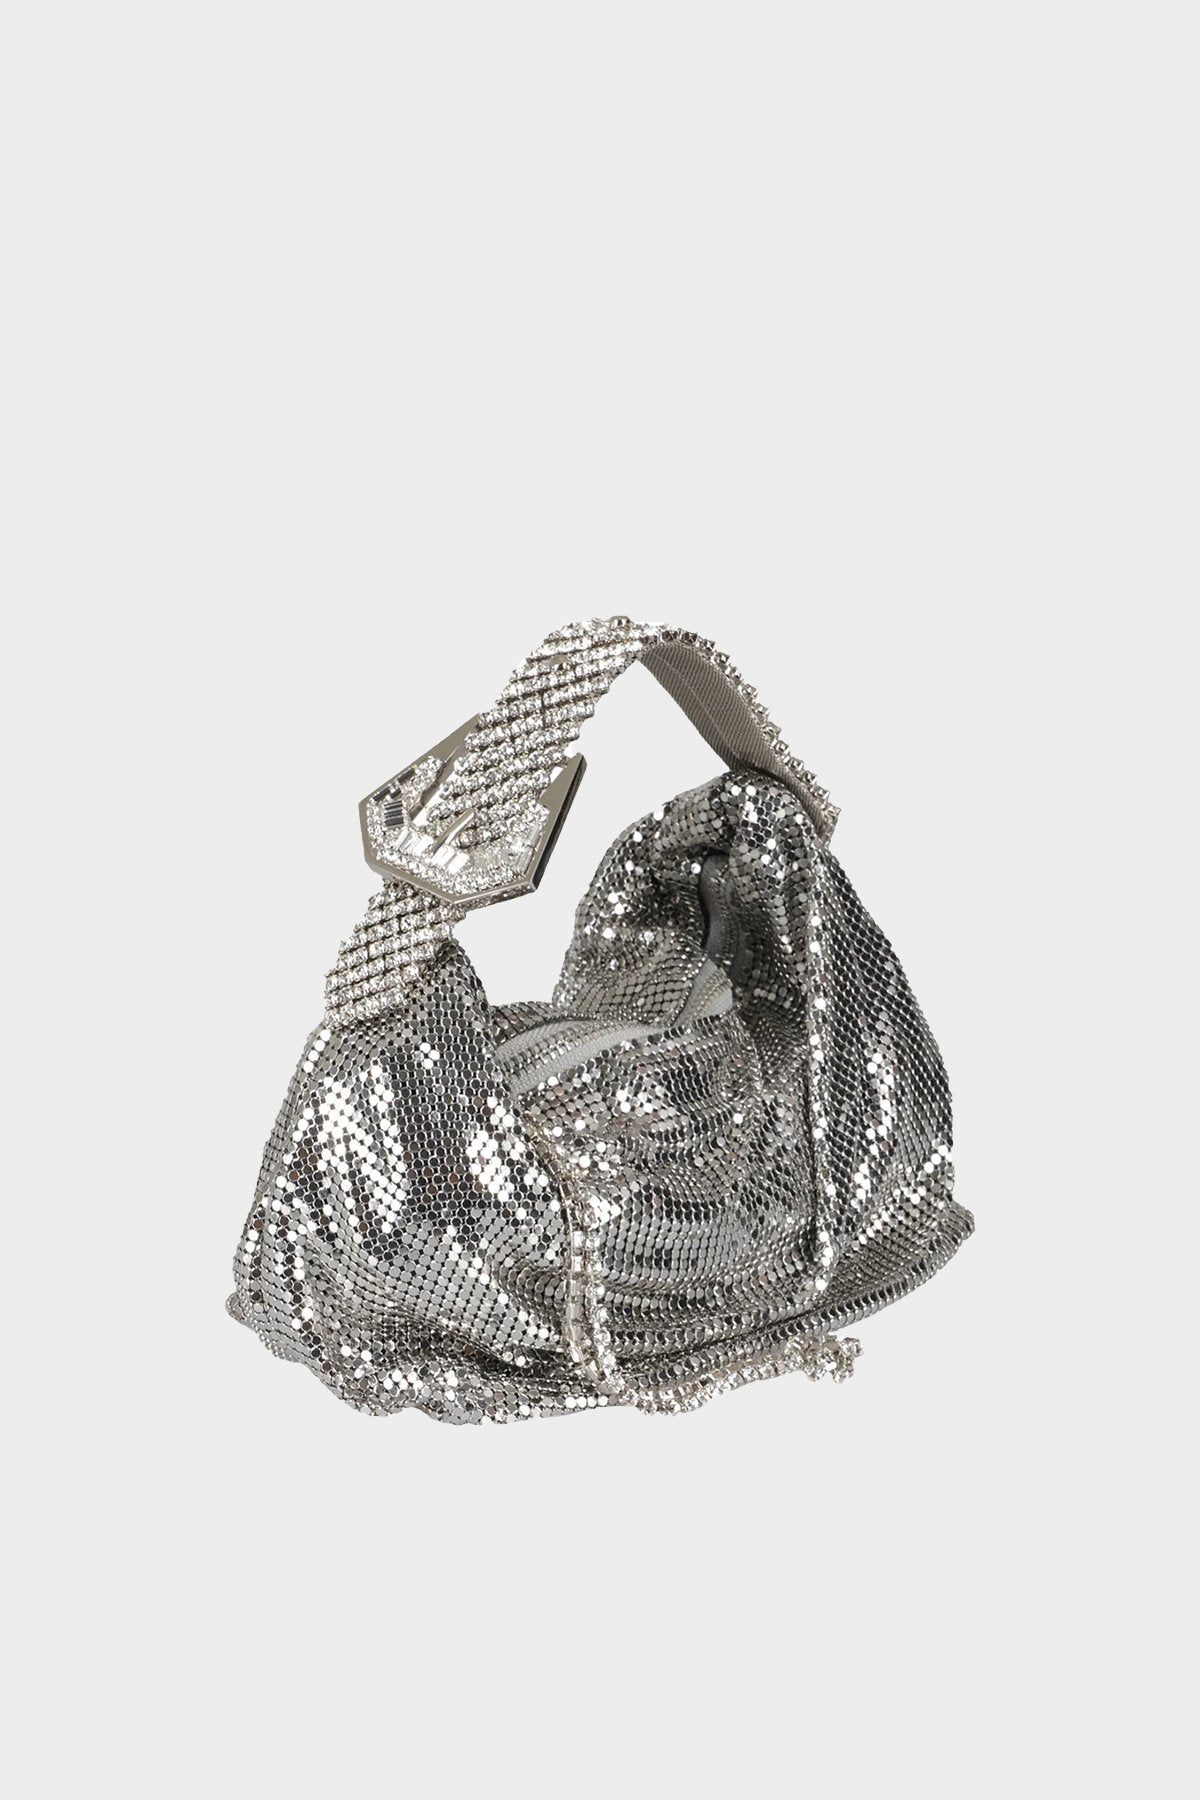 Jill Metal Mesh Bag in Silver - shop-olivia.com